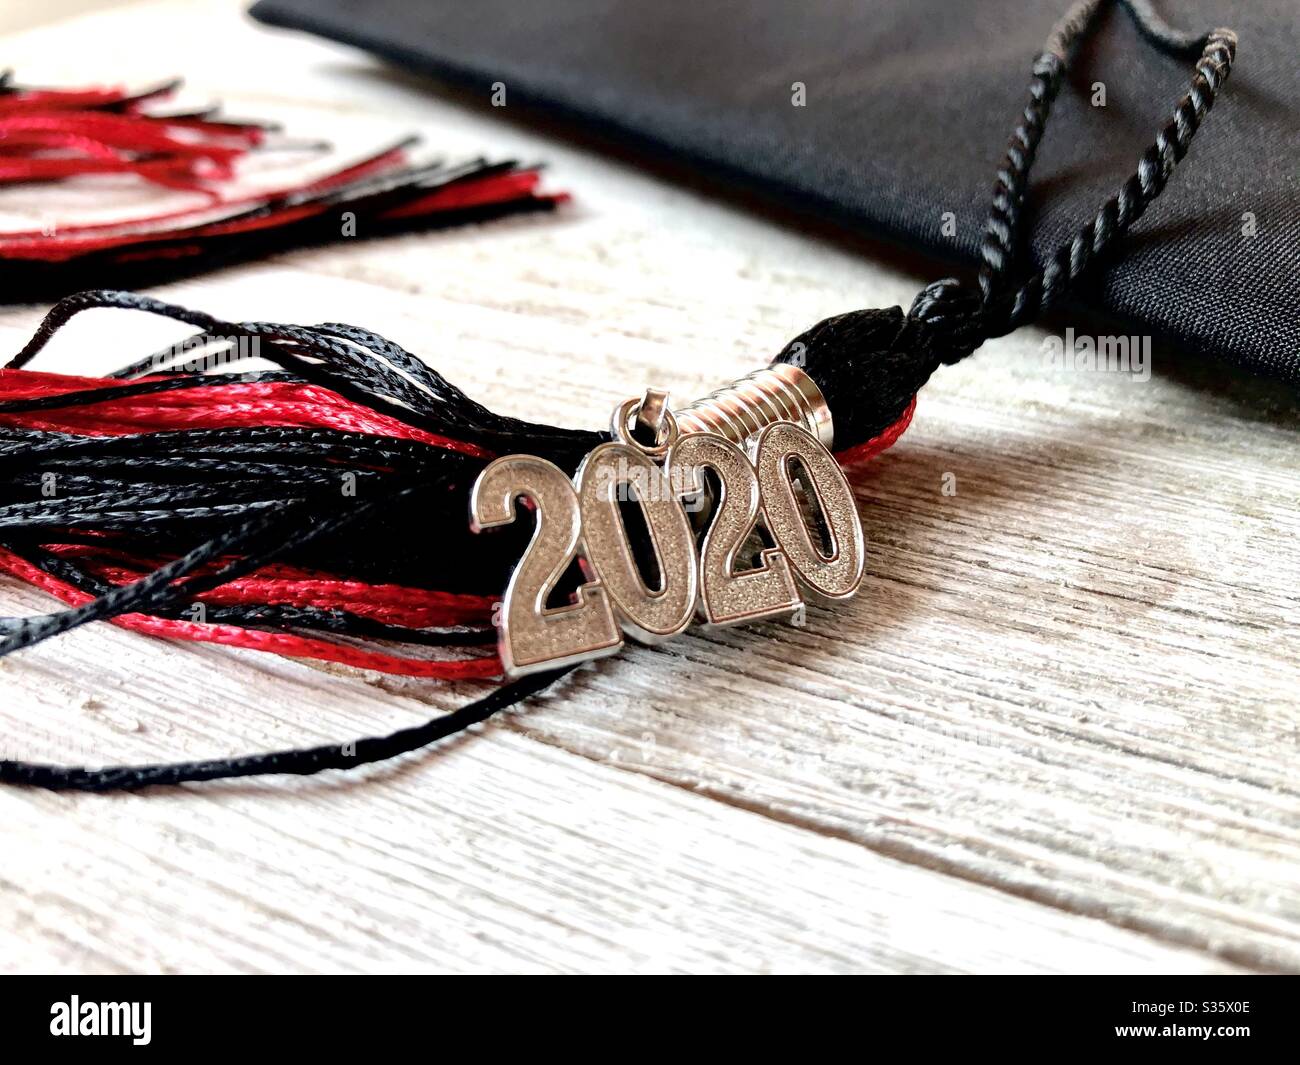 Gorra de graduación roja y negra 2020 y borla sobre una superficie de madera Foto de stock